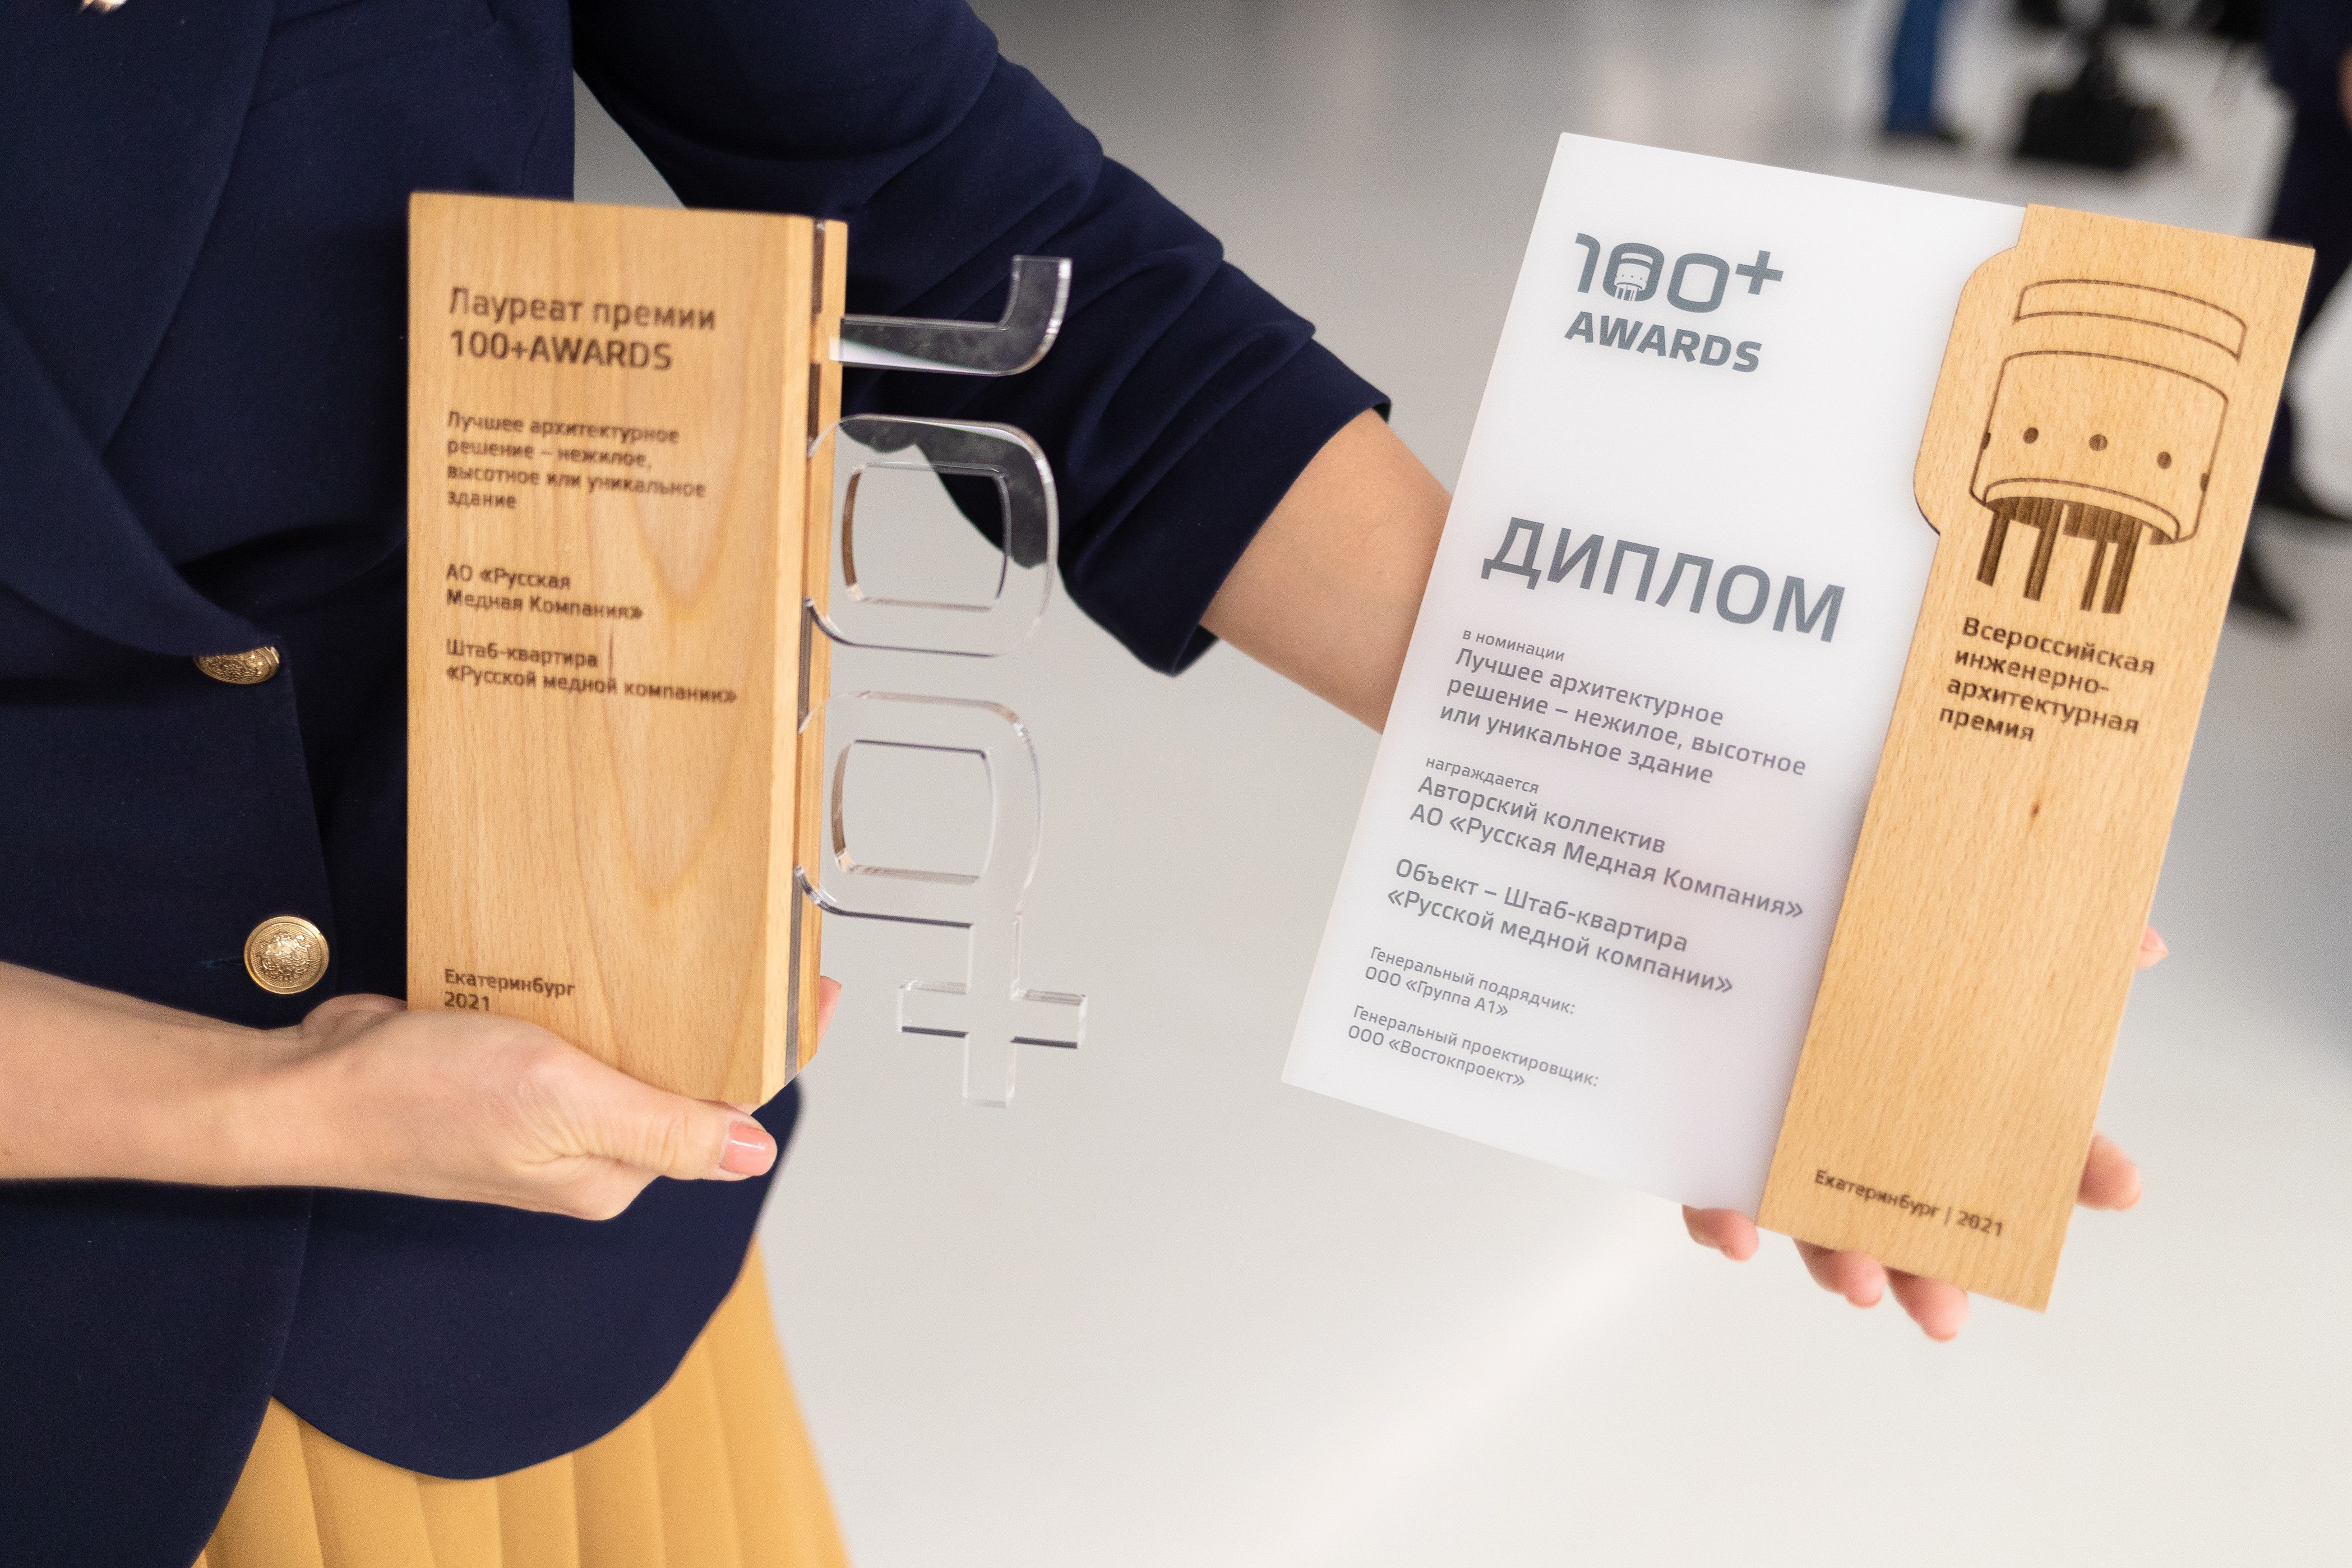 Всероссийская премия 100+ Awards ведет прием заявок